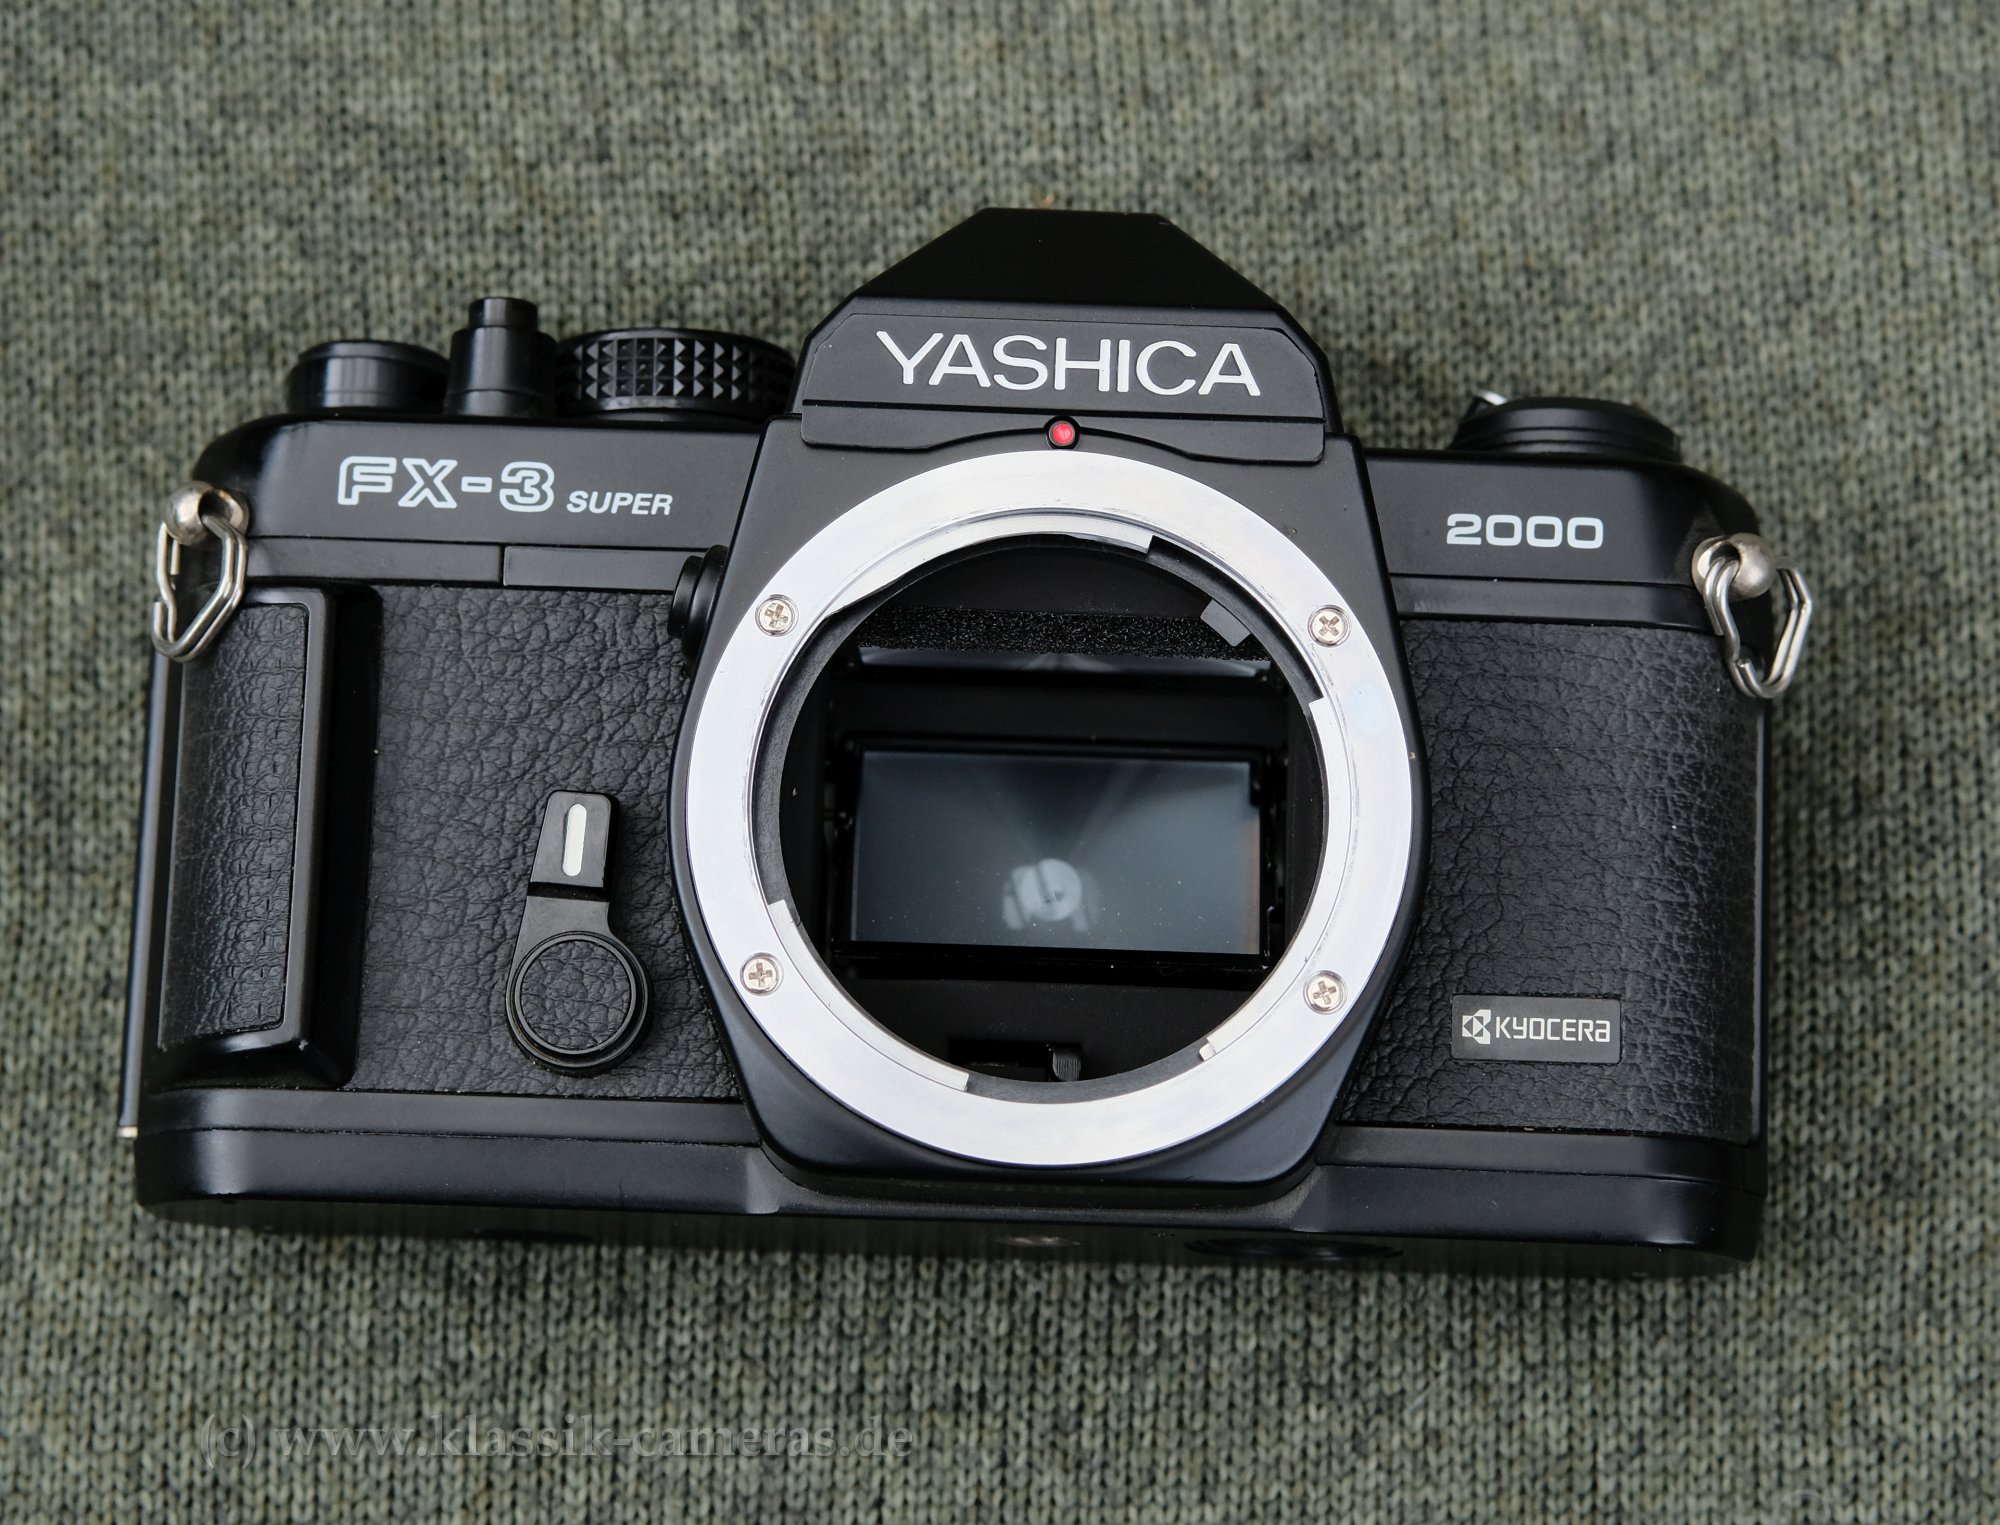 Yashica FX-3 super
            lens mount